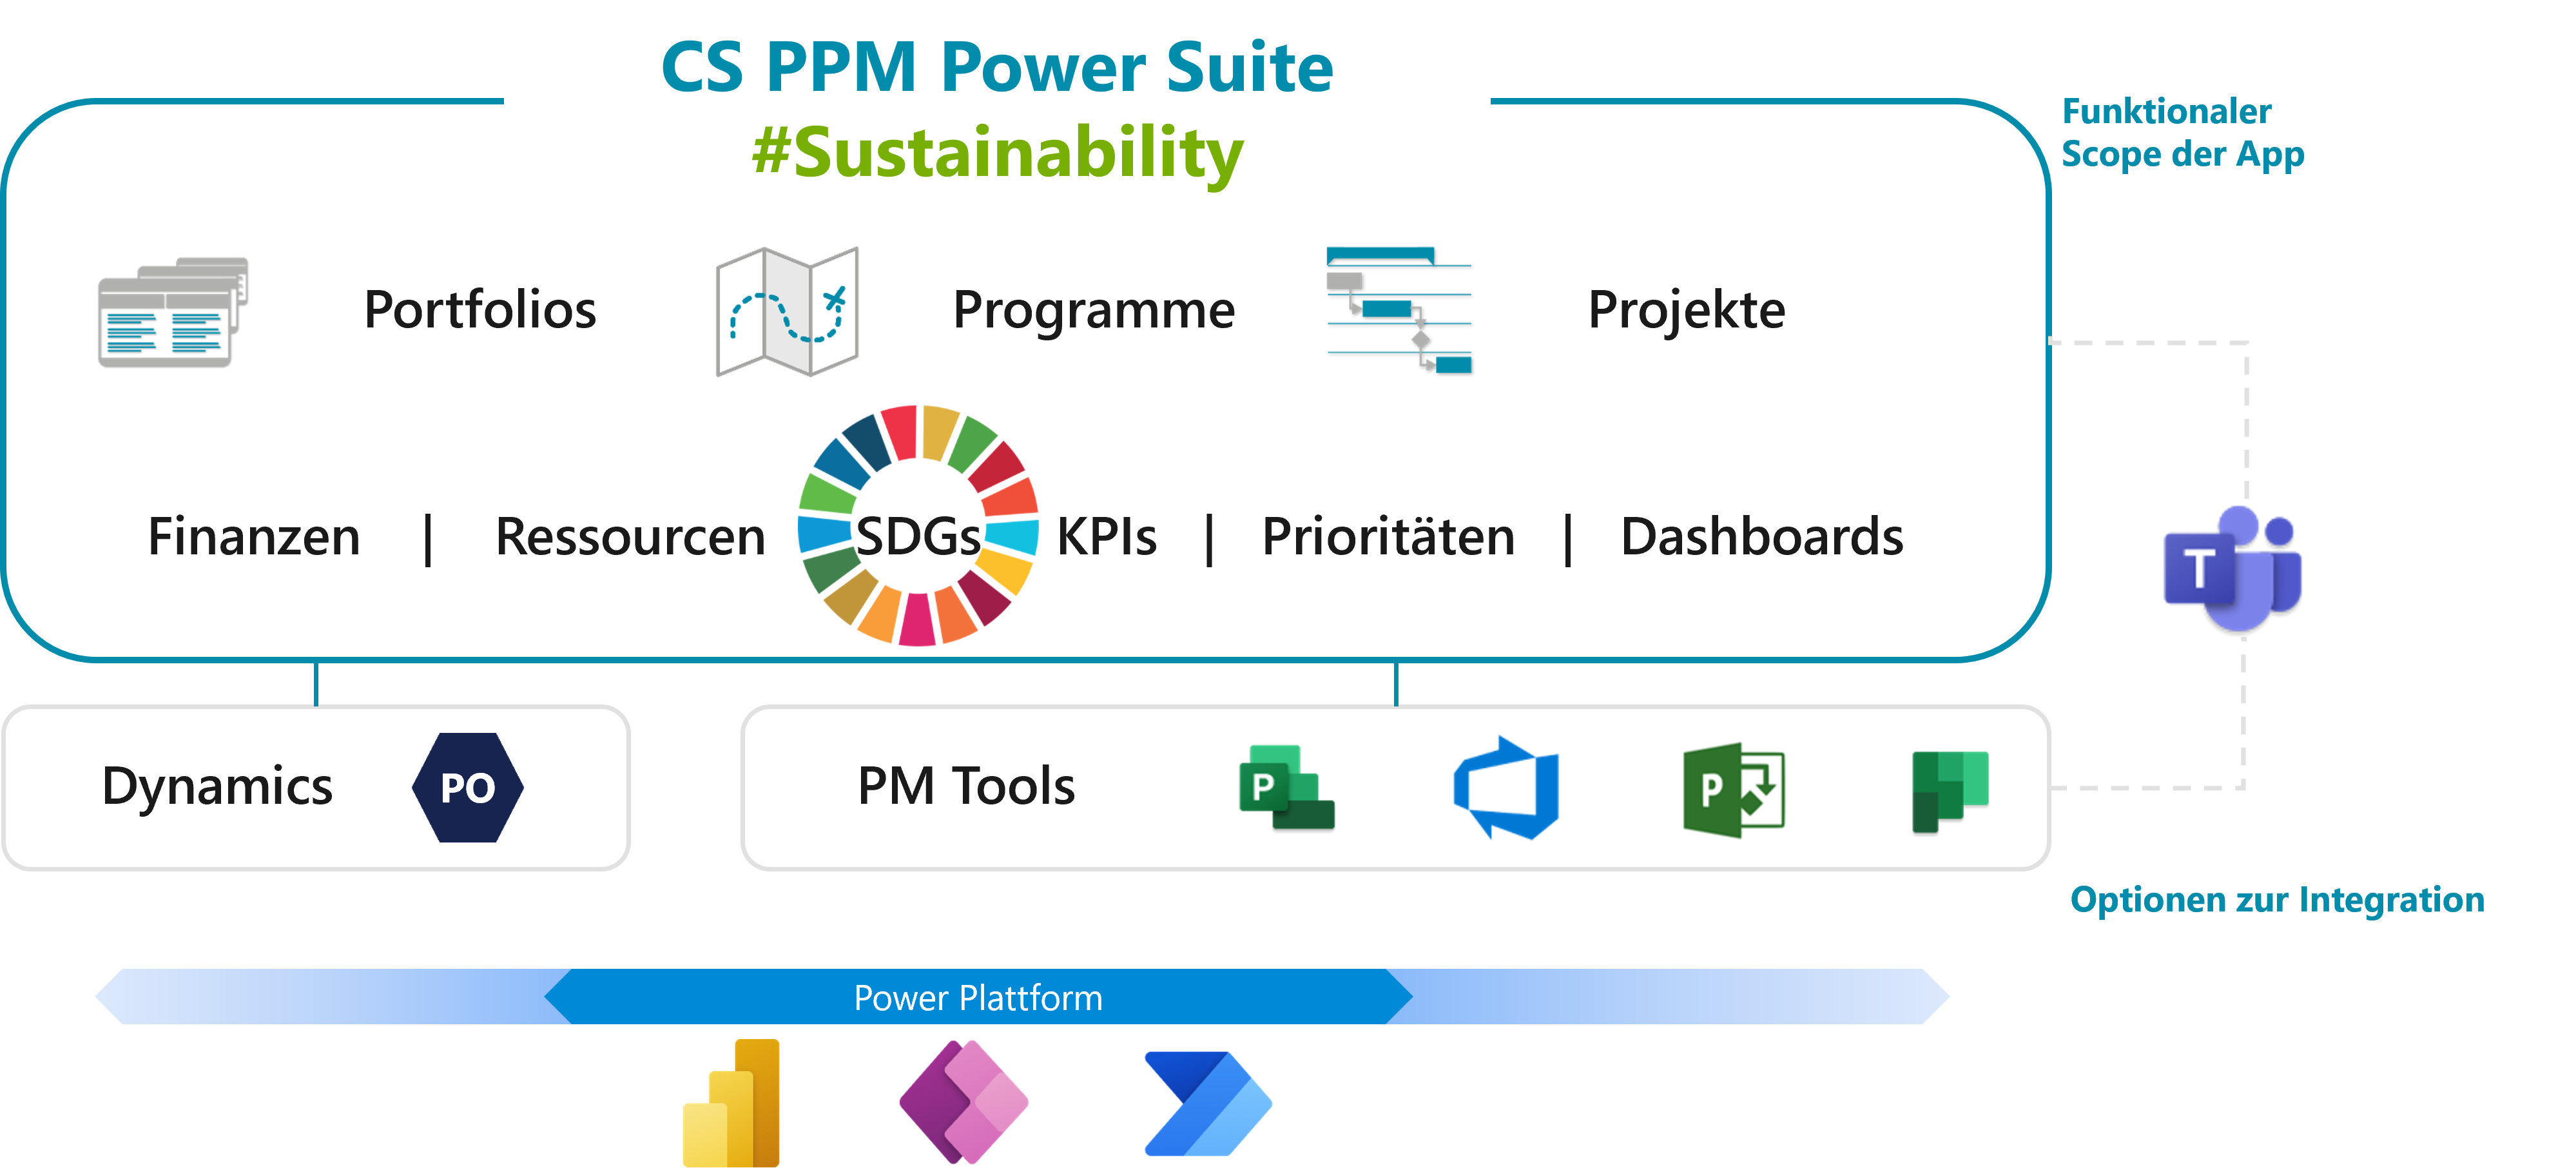 CS PPM Power Suite. Eine flexible Plattform, um Nachhaltigkeit mit PPM zu integrieren.